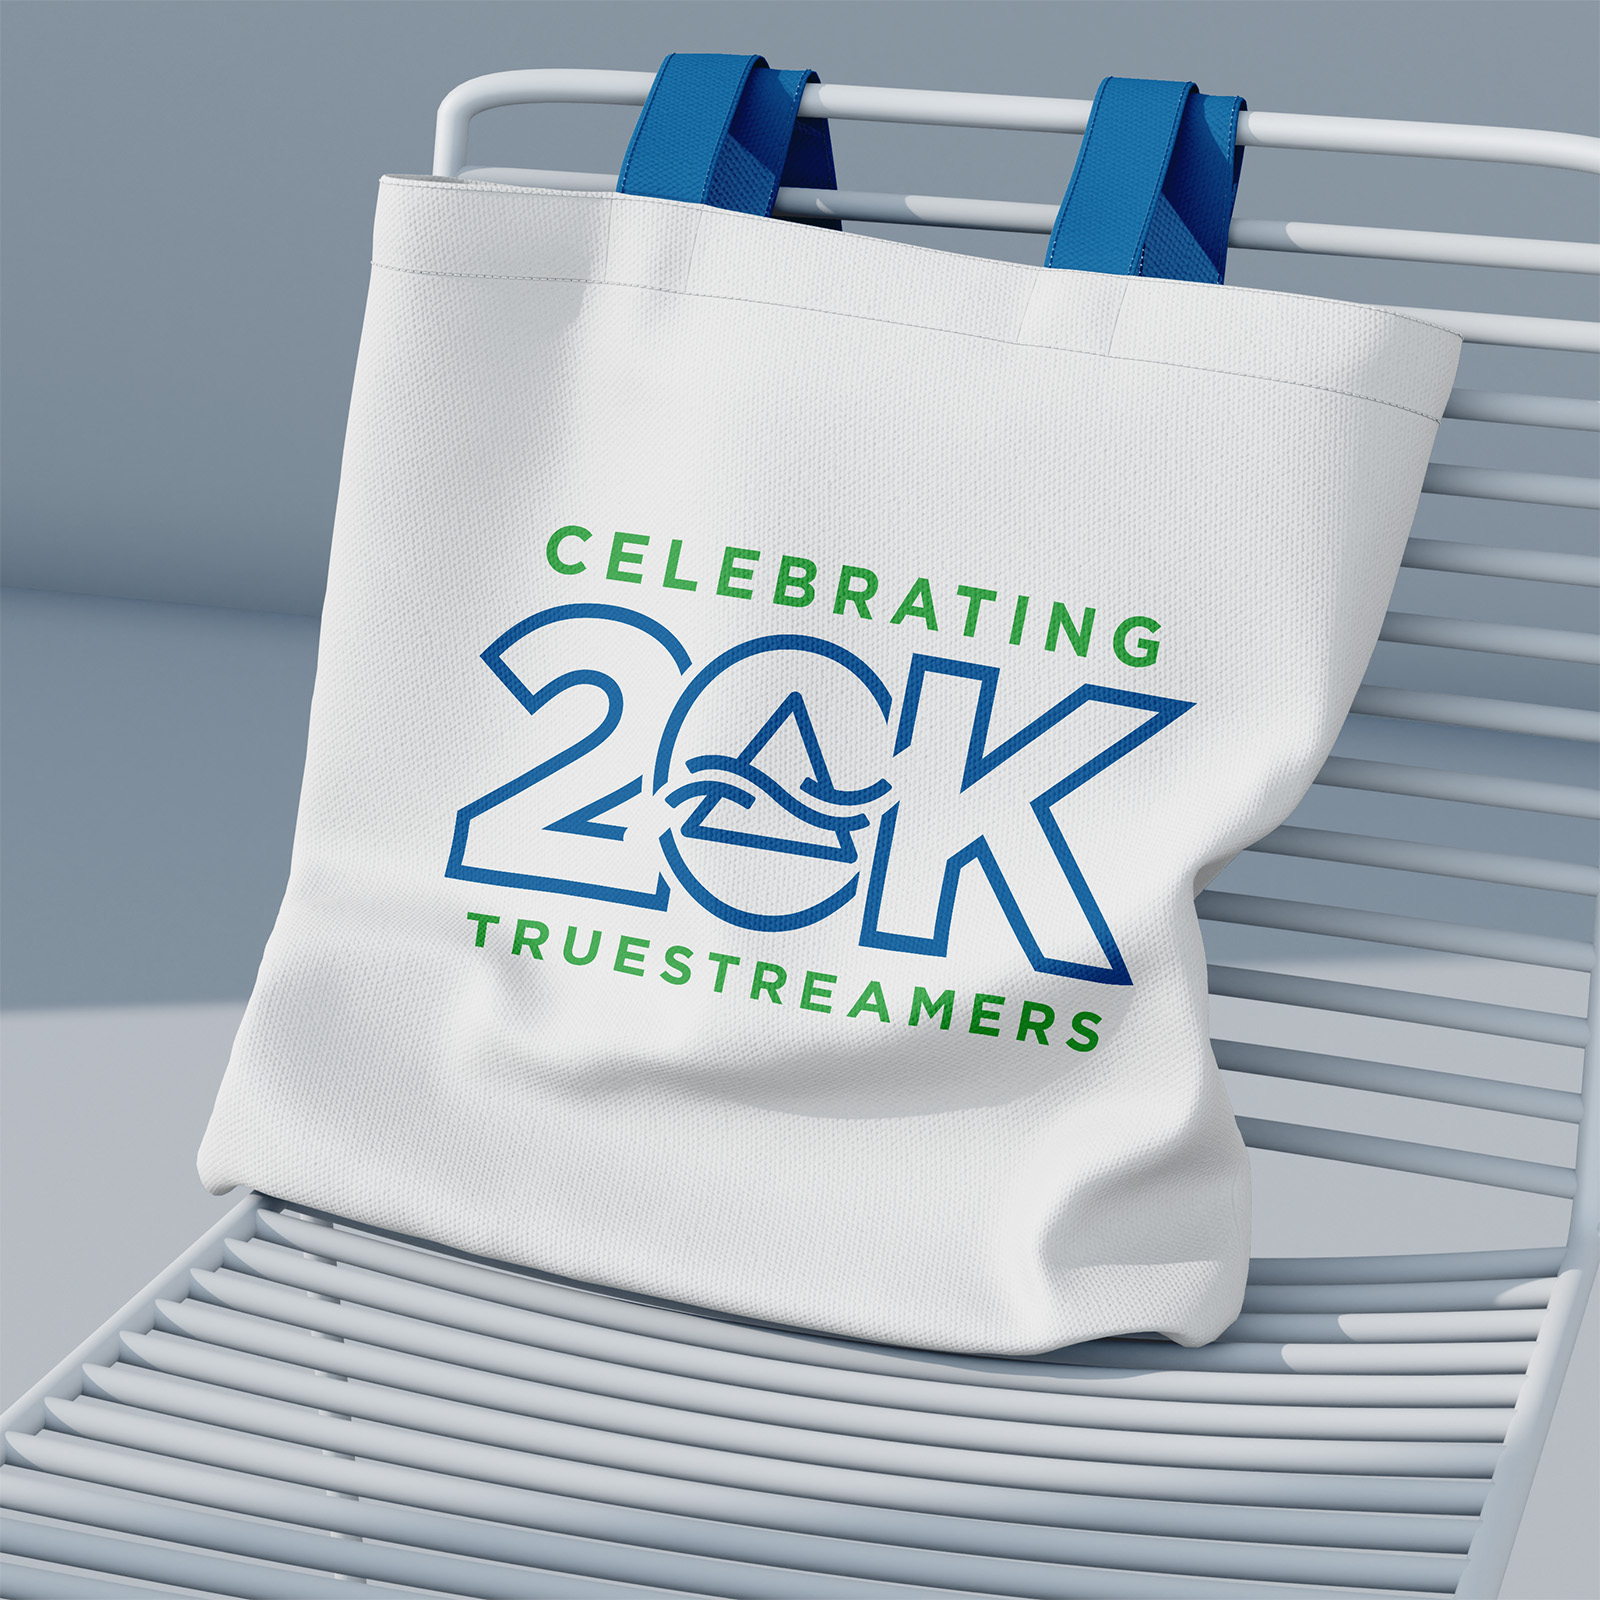 logo design celebrating 20k milestone